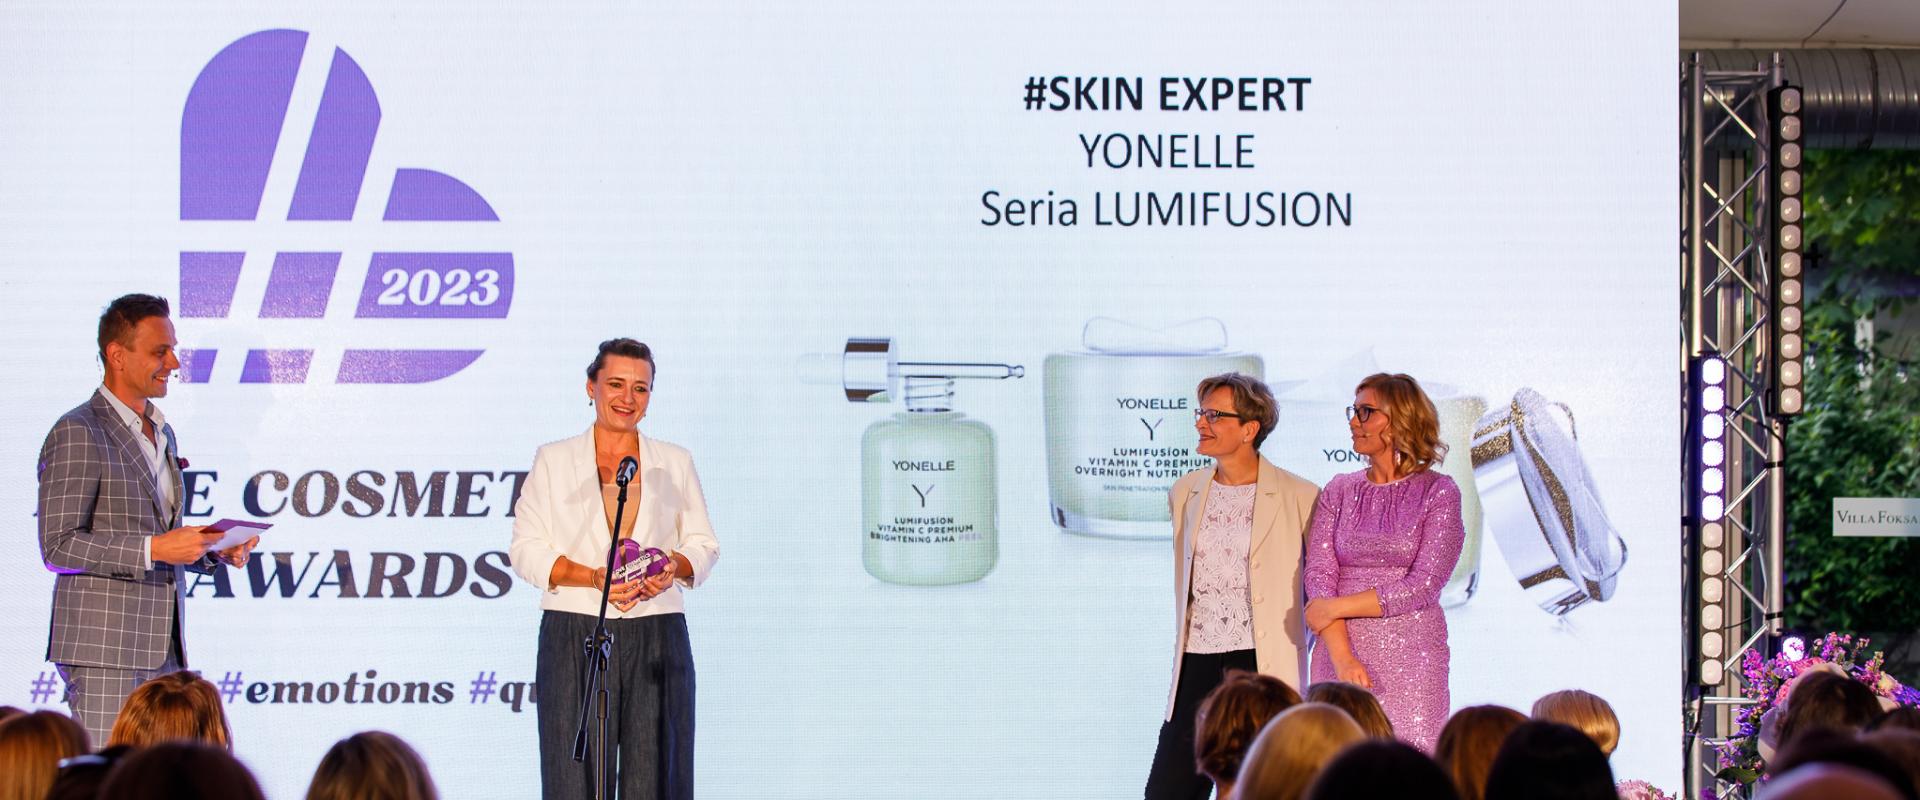 W kategorii Skin Expert konkursu Love Cosmetics Awards 2023 wygrywa Yonelle